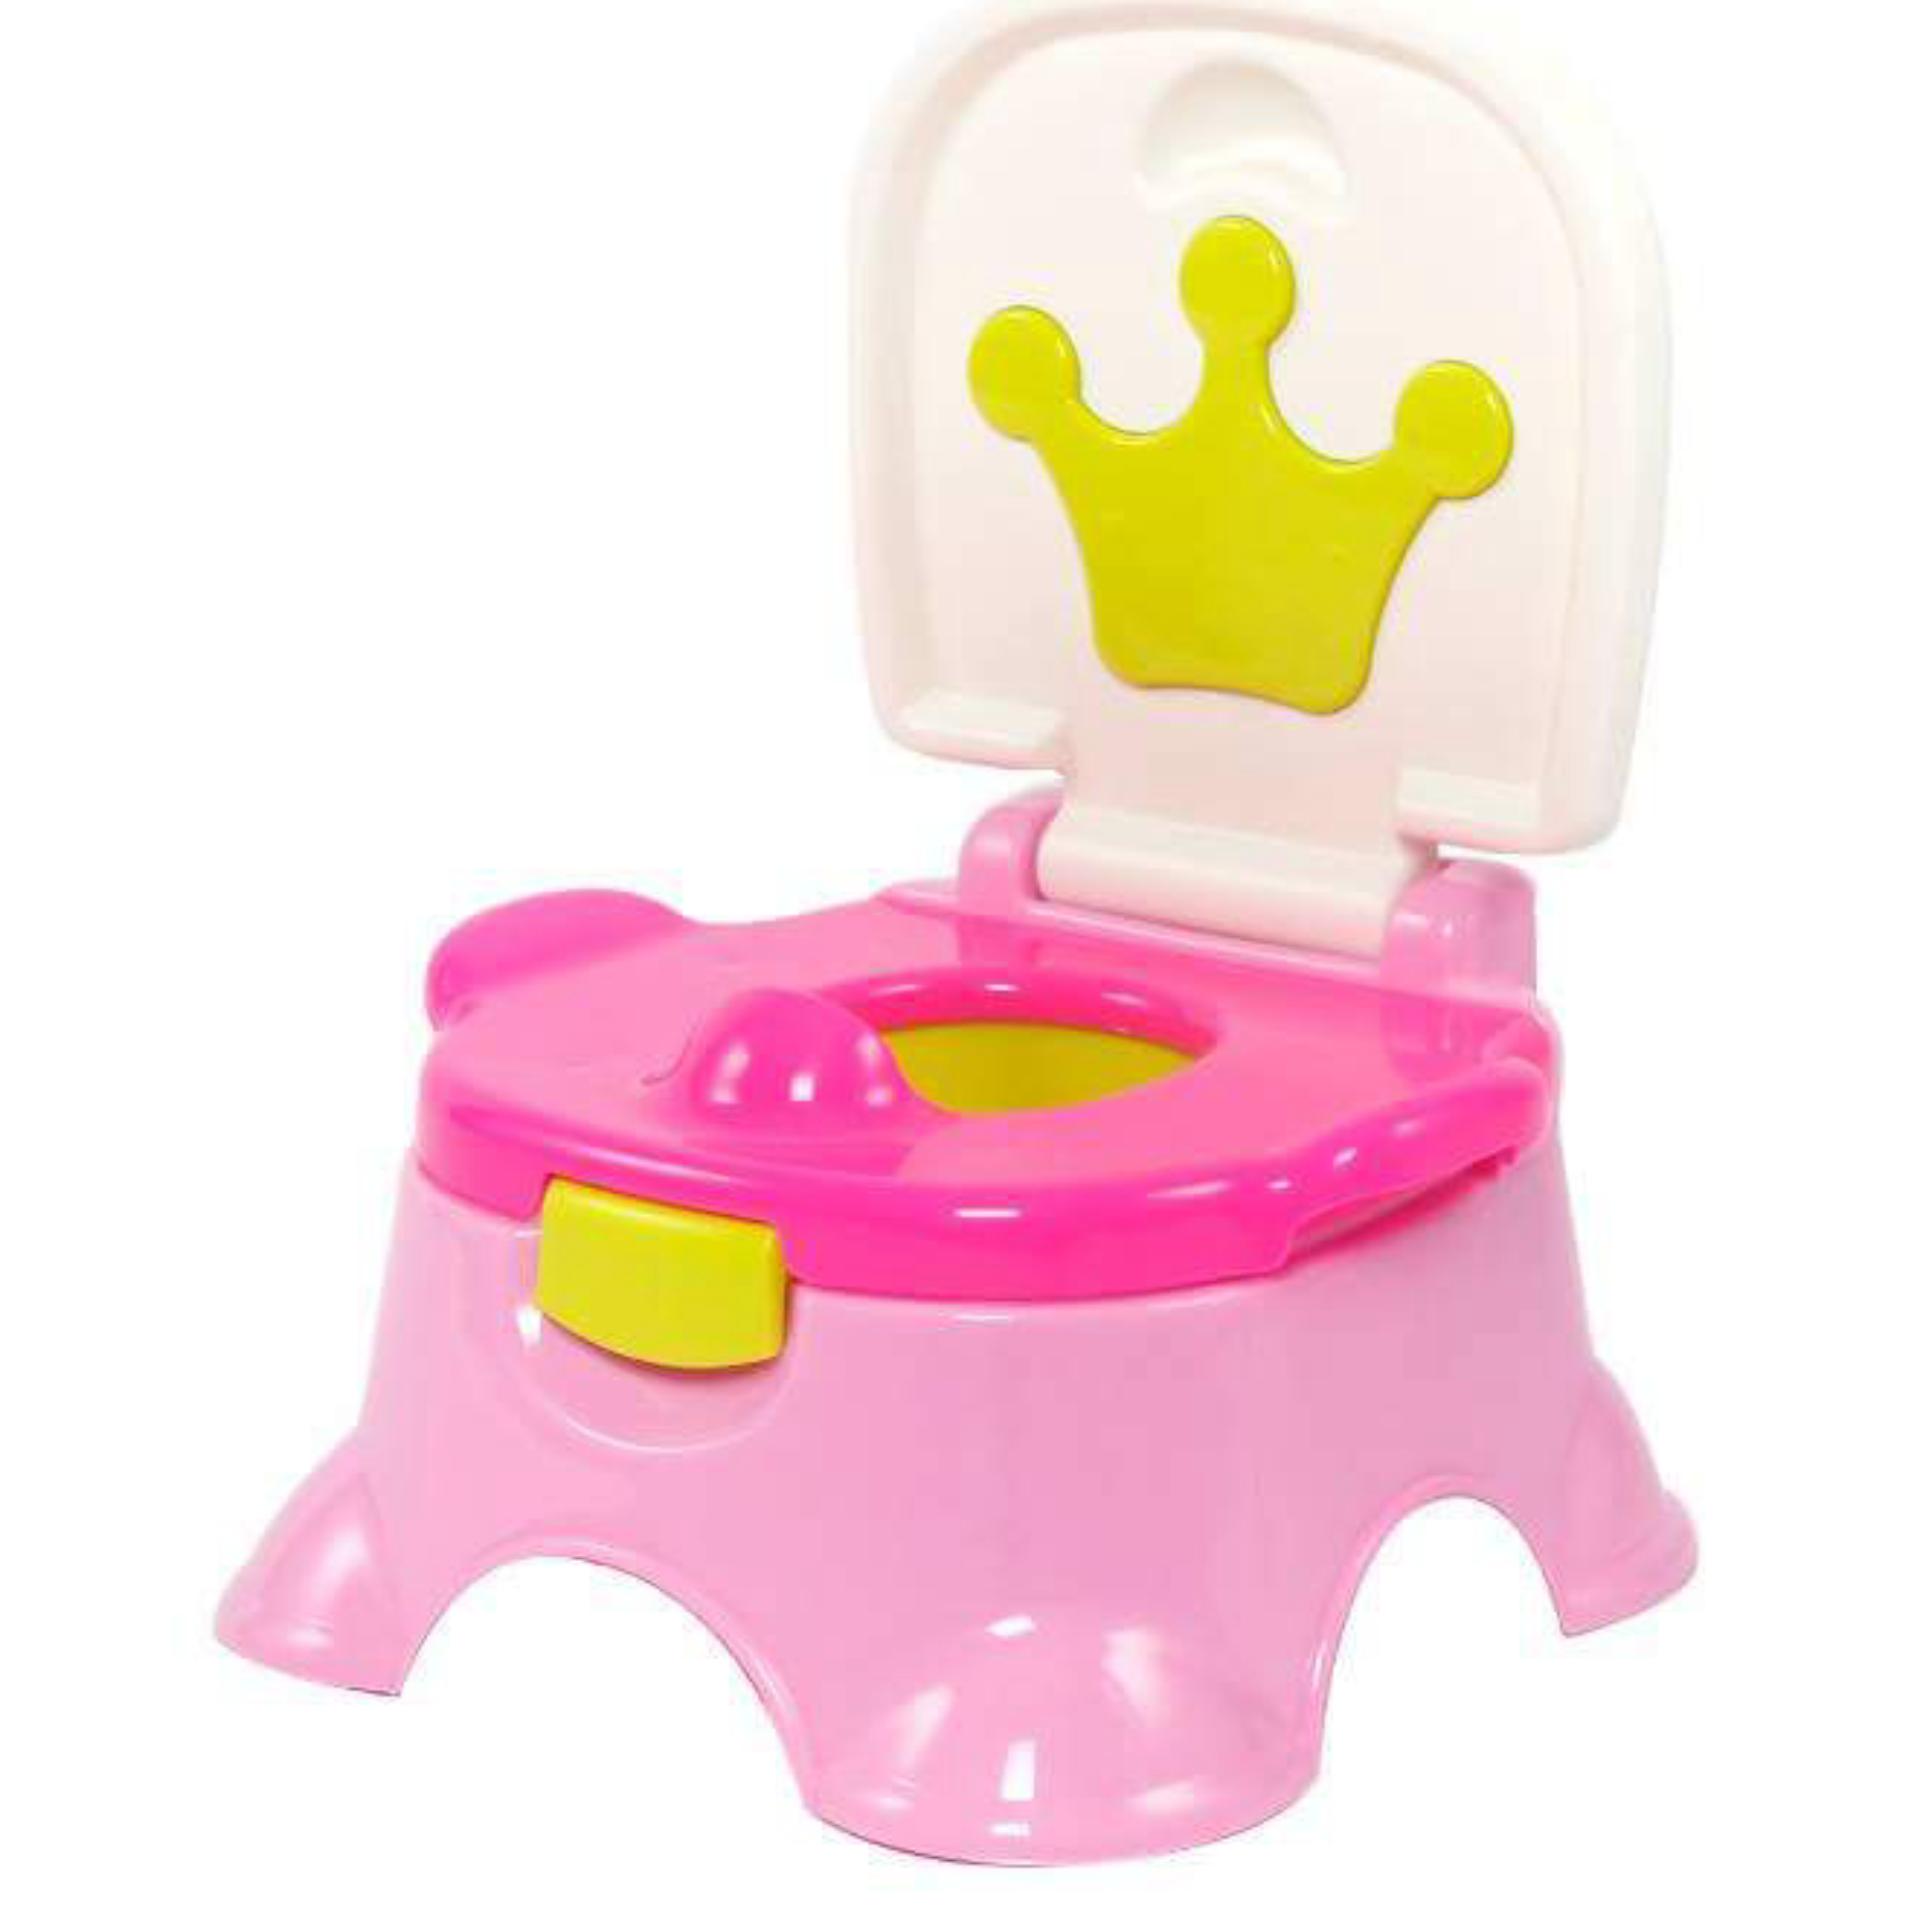 Minlane Kids Pink Potty Toilet กระโถนฝึกเด็กขับถ่าย สีชมพู